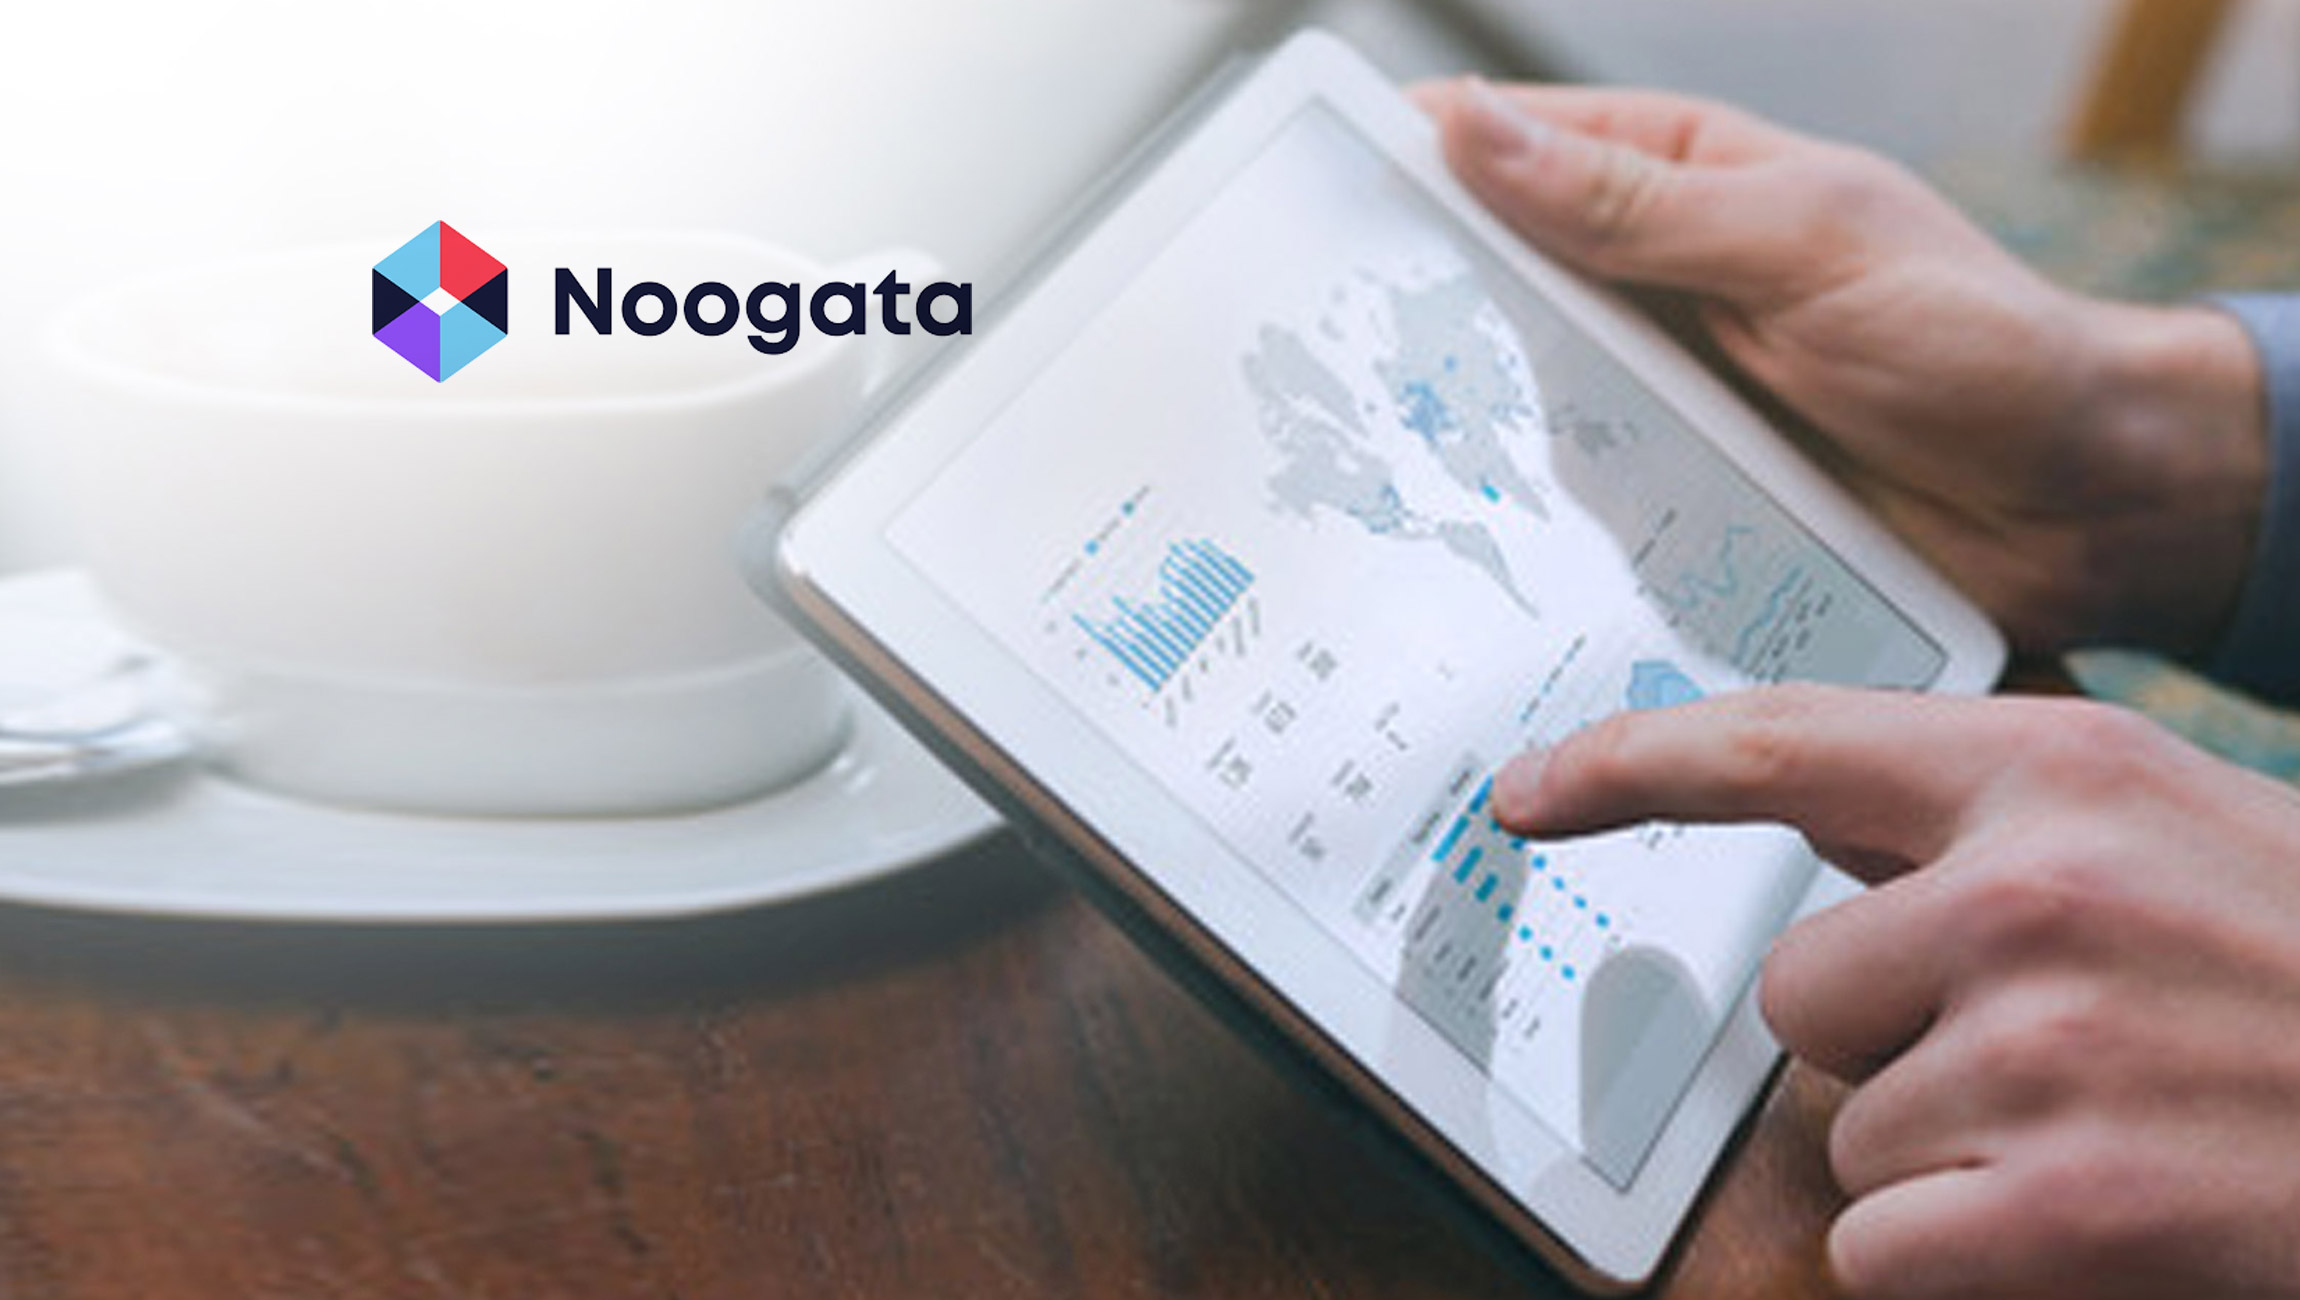 Noogata launches